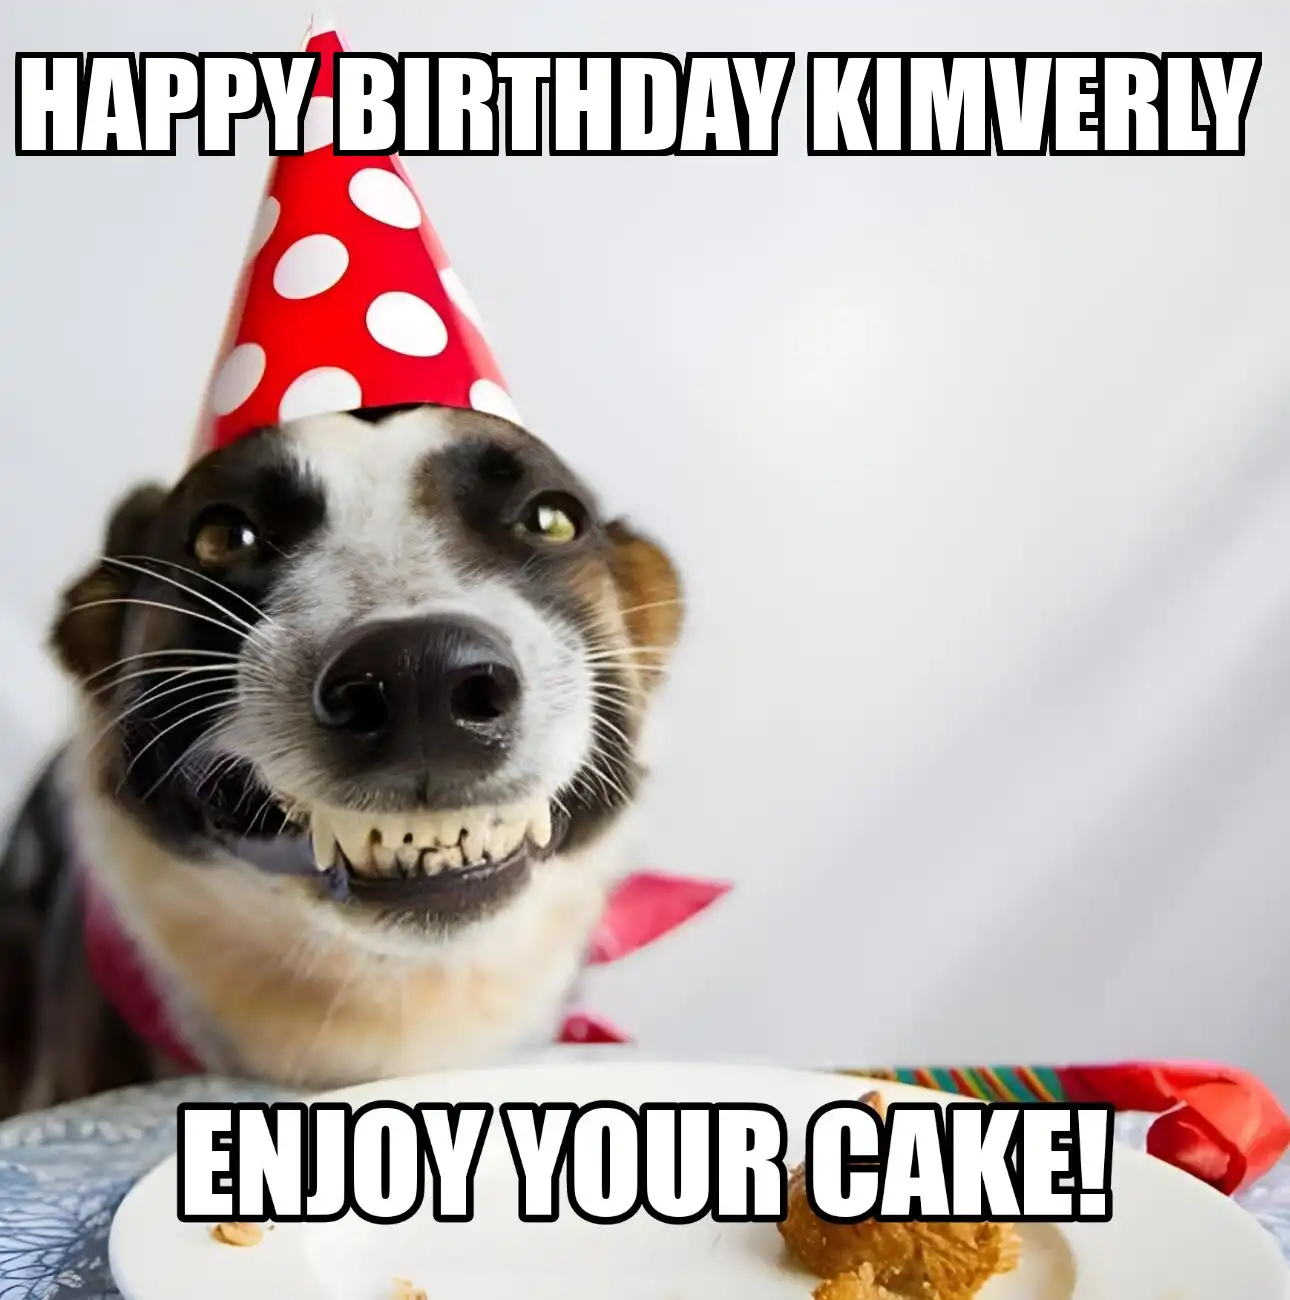 Happy Birthday Kimverly Enjoy Your Cake Dog Meme